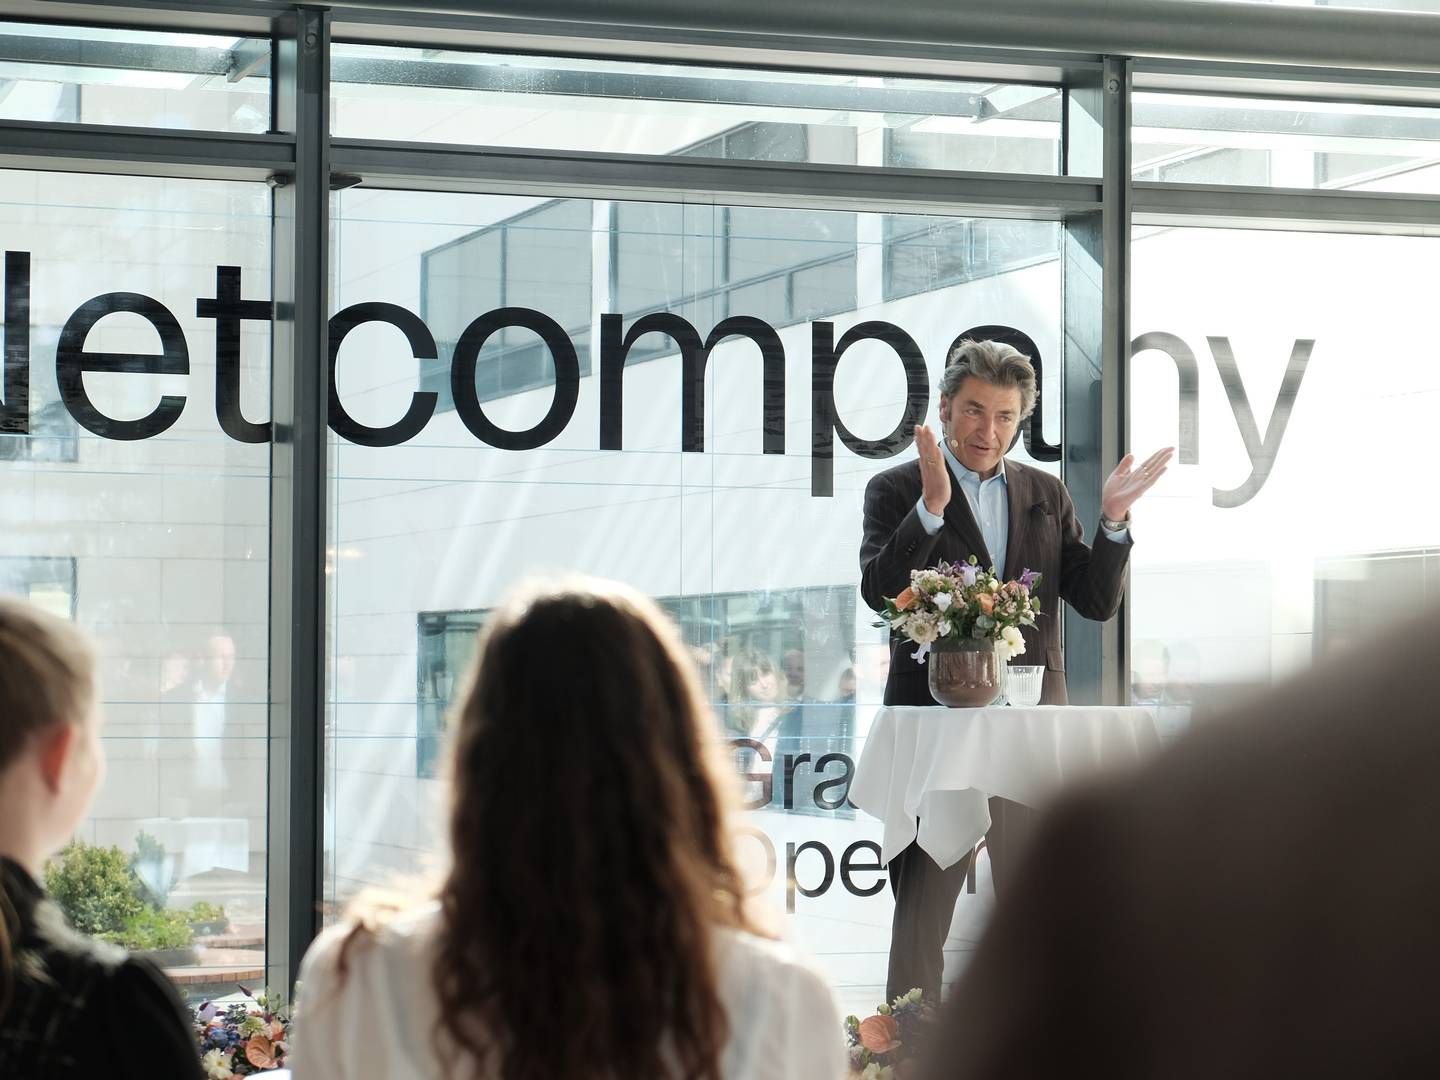 Adm. direktør Andre Rogaczewski fra Netcompany aflægger regnskab for første kvartal torsdag - og der kan være udsigt til vækst i omsætningen. | Foto: Thomas Bruun Funch